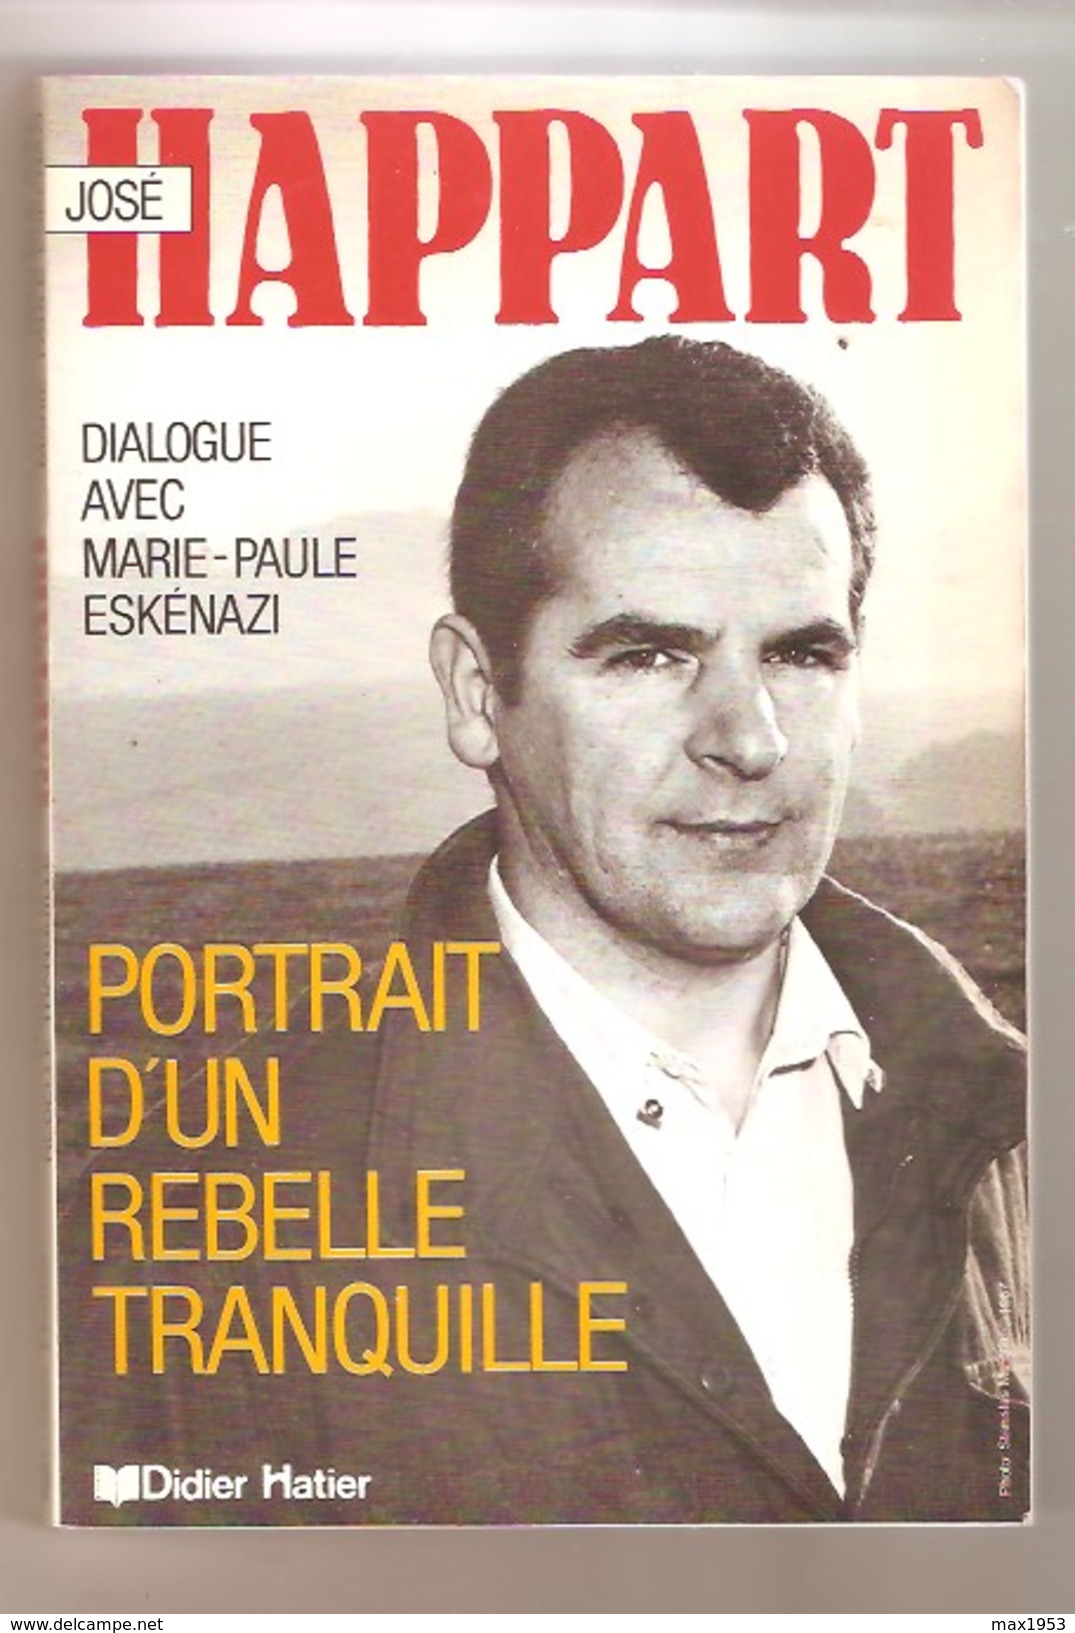 José HAPPART Portrait D'un Rebelle Tranquille - Dialogue Avec Marie Paule Eskénazi - Didier Hatier, Bruxelles, 1987 - Belgium